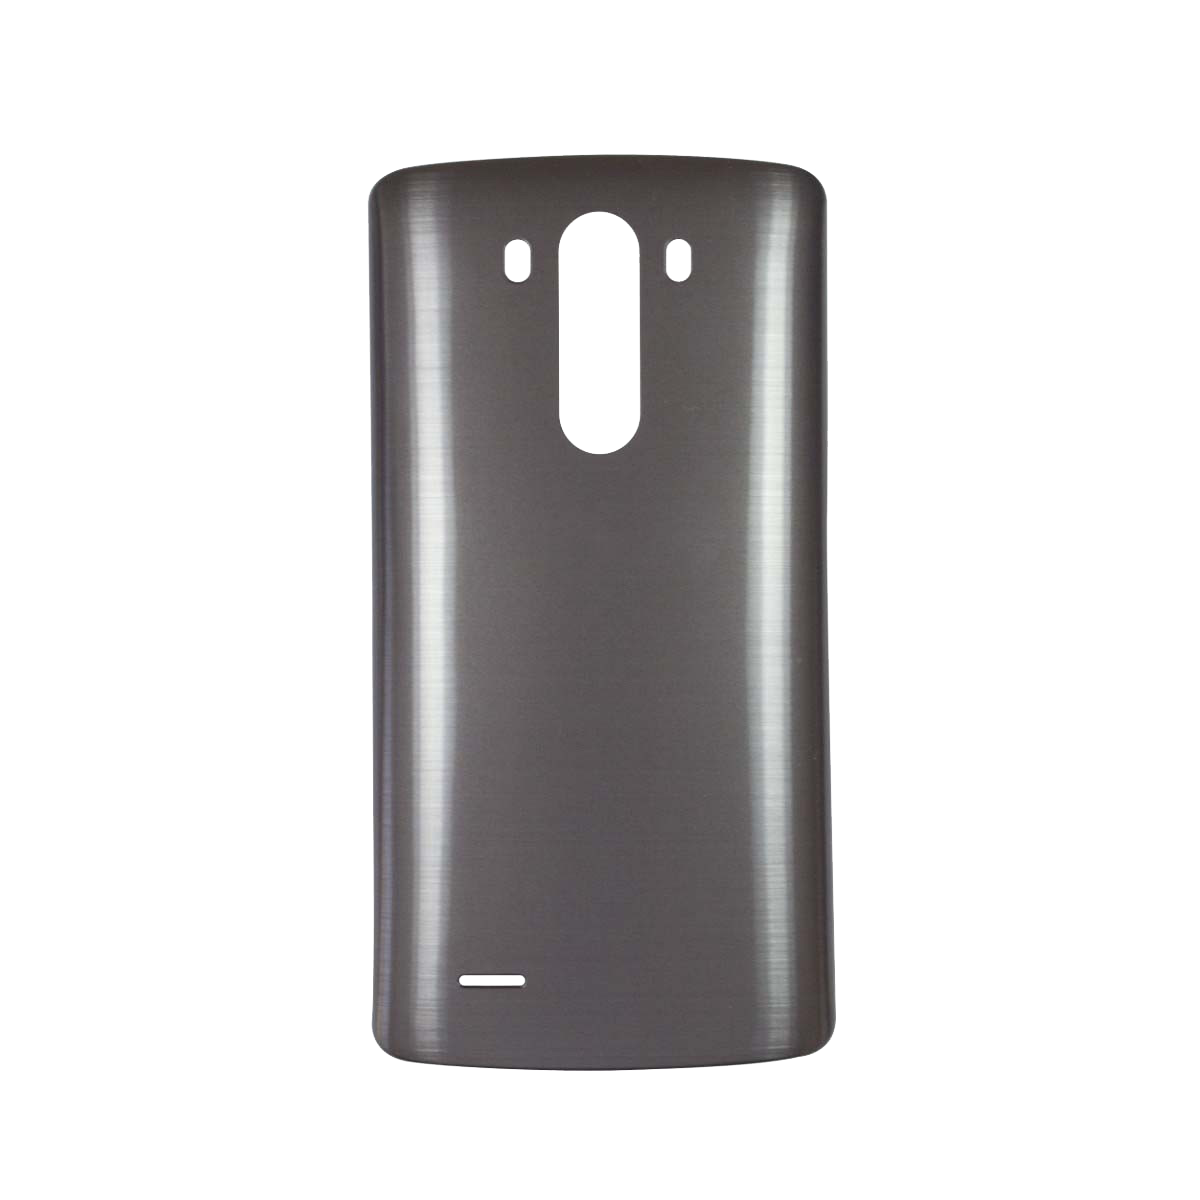 LG G3 Battery Door with NFC Antenna - Metallic Black (Generic)